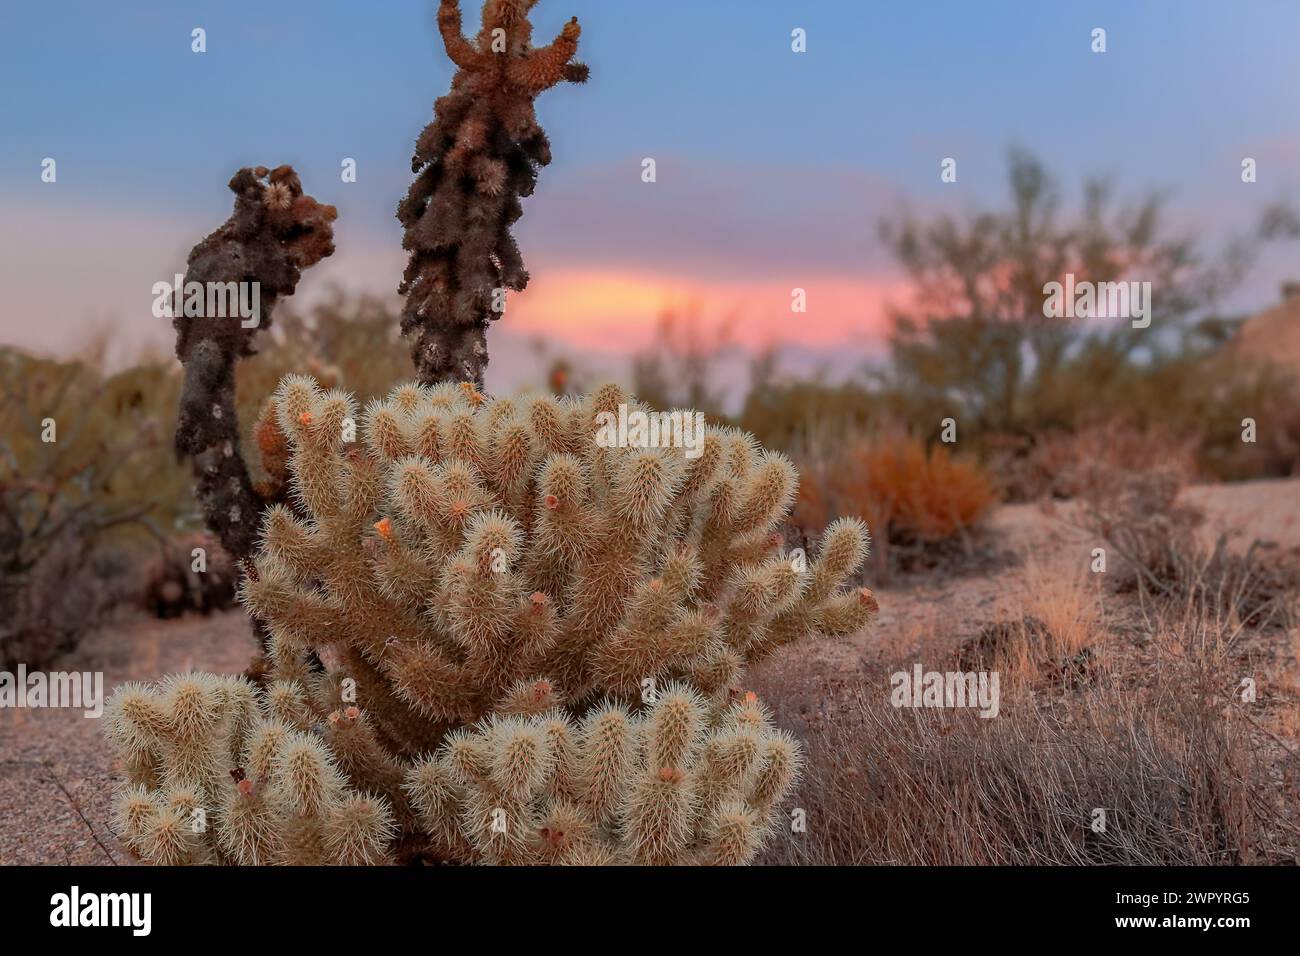 Ein lebhafter Sonnenuntergang wirft warme Farben über den Himmel hinter verschiedenen Kakteen in einer Wüstenlandschaft. Eine Nahaufnahme eines Teddybären Cholla. Stockfoto